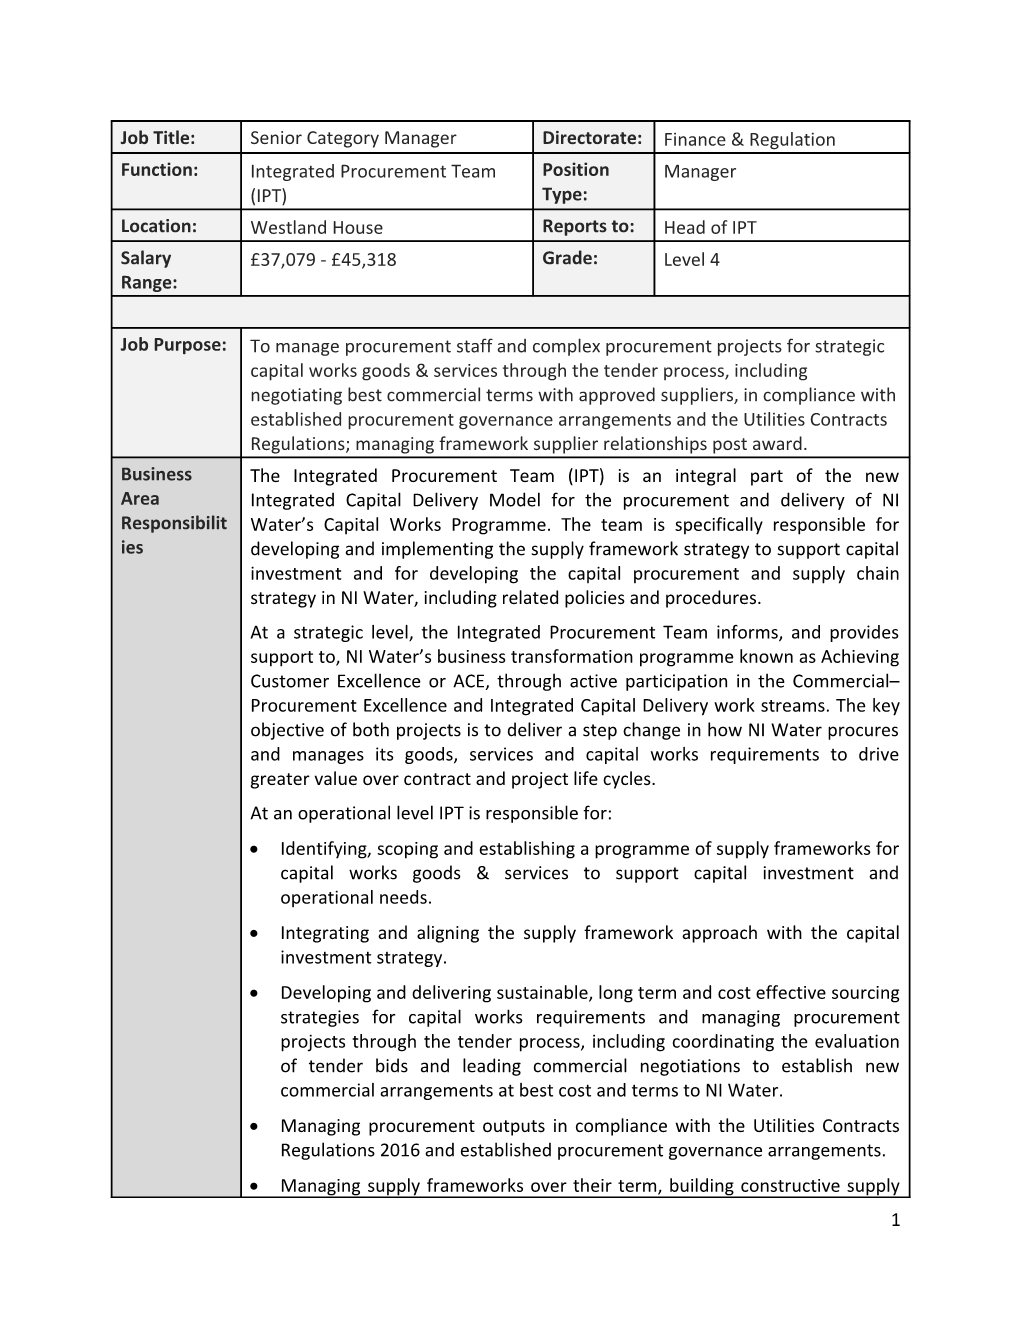 Job Description Form s1